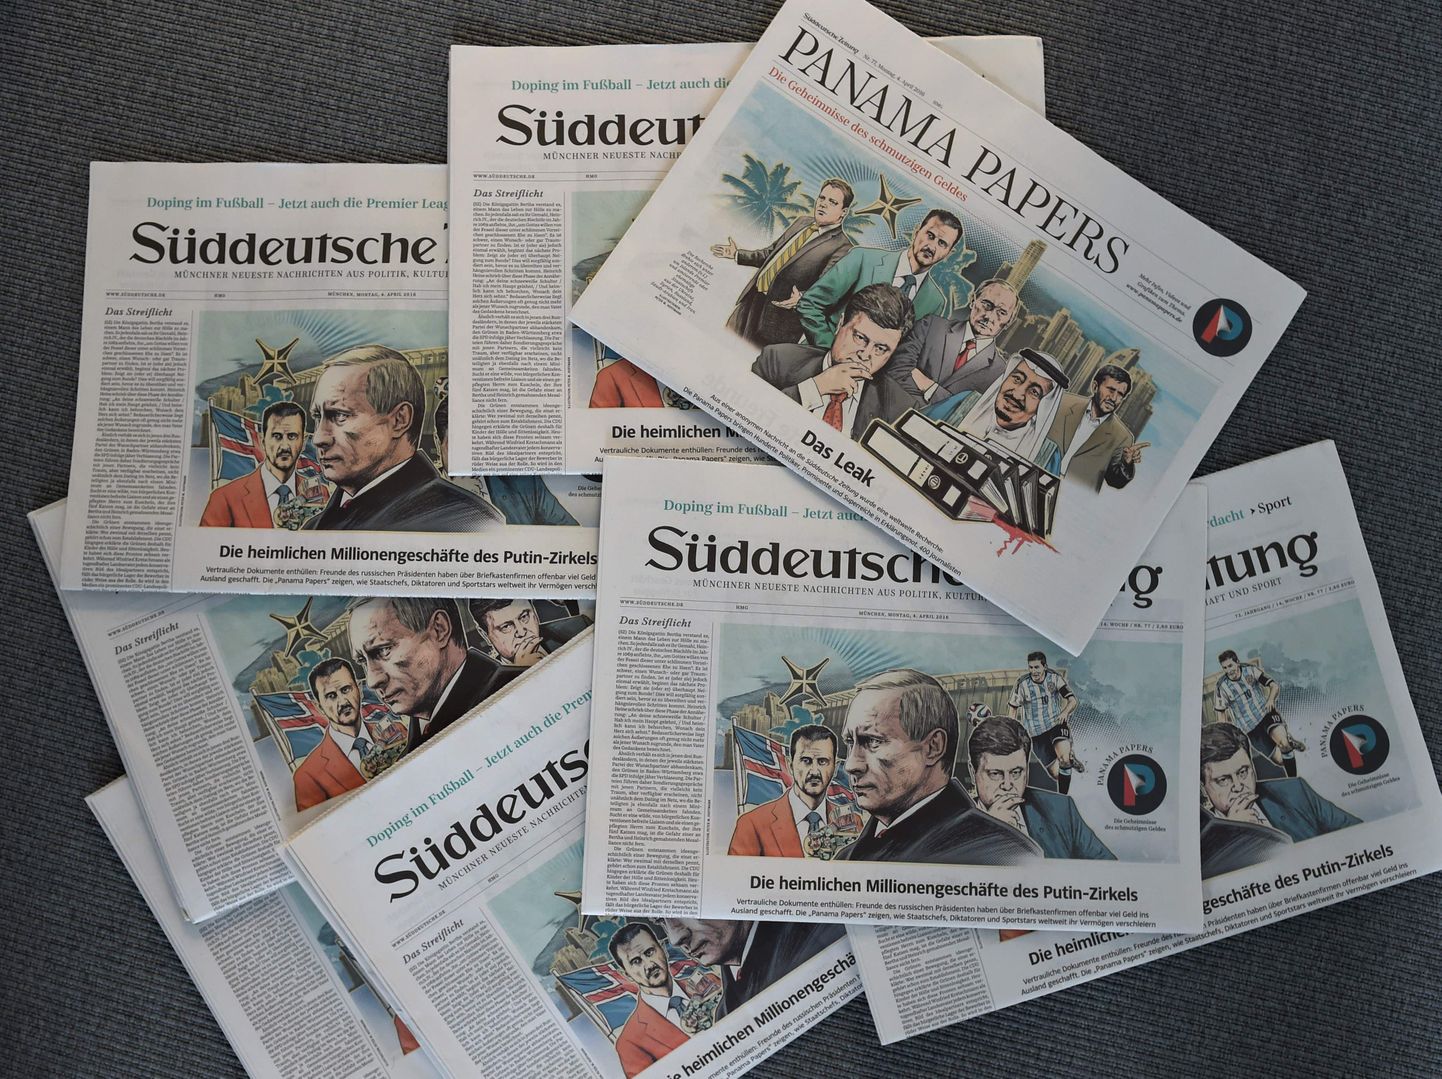 Panama paberite lekke uudis katmas ajalehe Süddeutsche Zeitung esikülge.